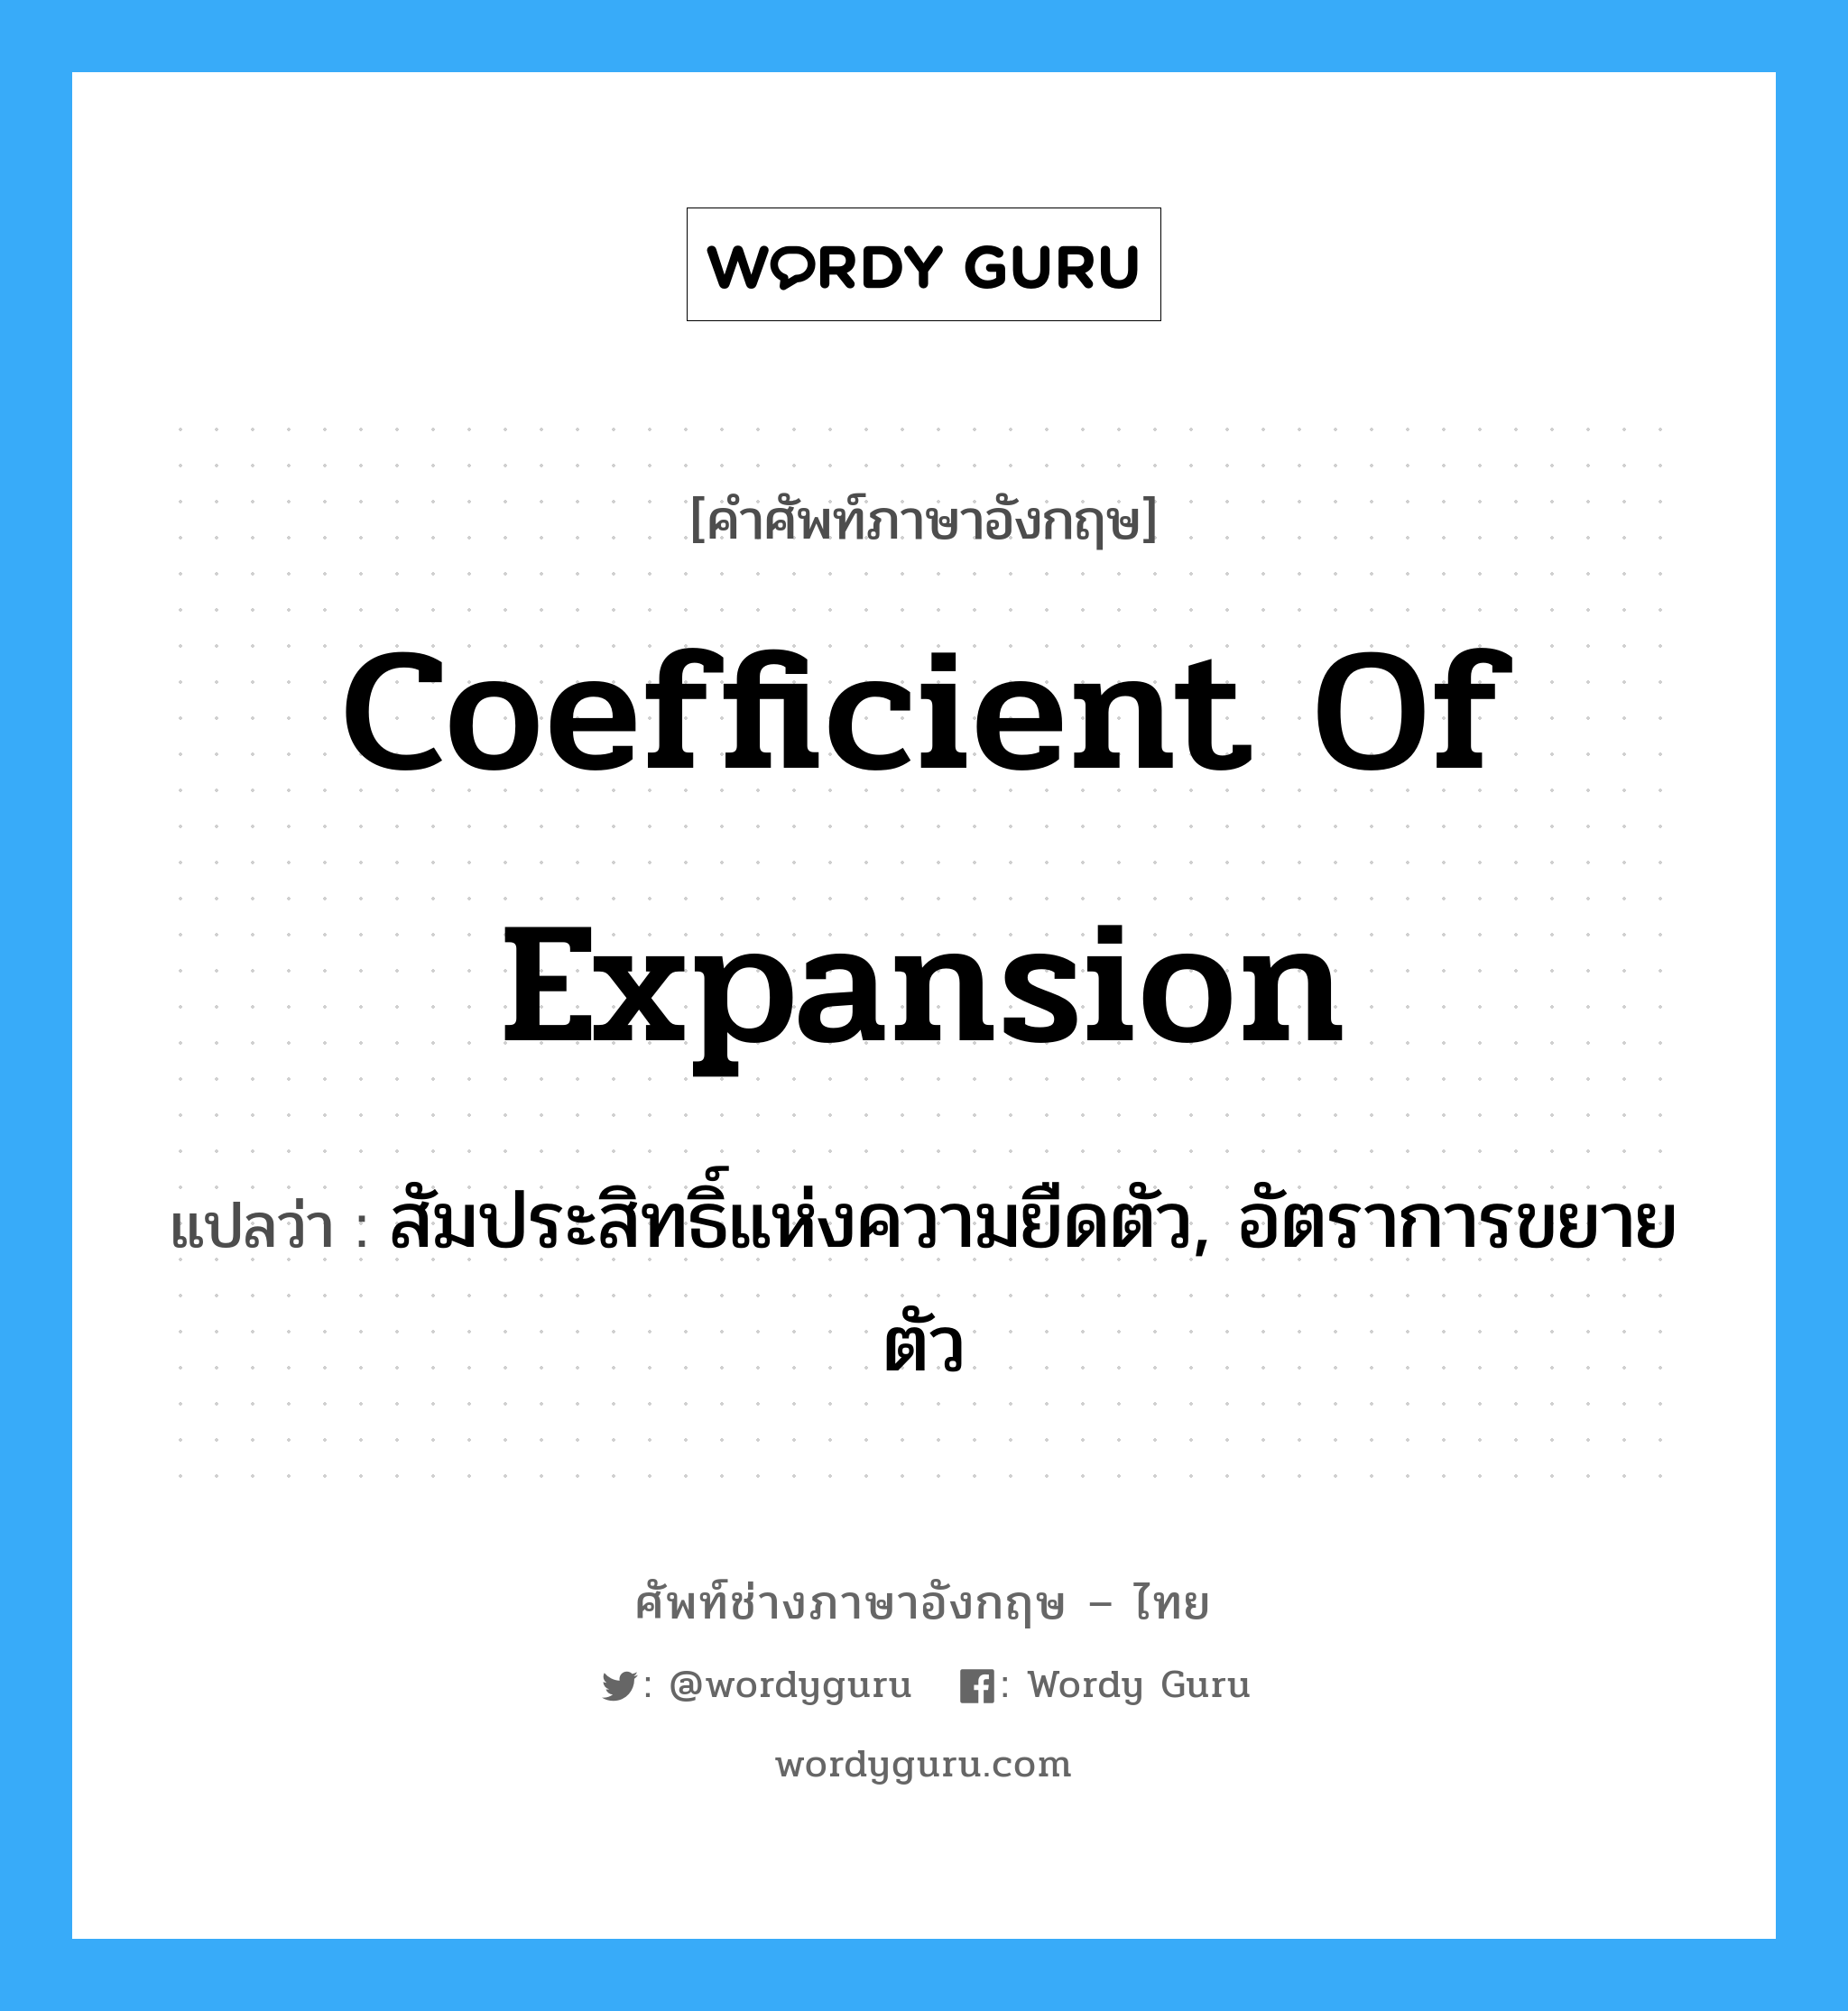 coefficient of expansion แปลว่า?, คำศัพท์ช่างภาษาอังกฤษ - ไทย coefficient of expansion คำศัพท์ภาษาอังกฤษ coefficient of expansion แปลว่า สัมประสิทธิ์แห่งความยืดตัว, อัตราการขยายตัว